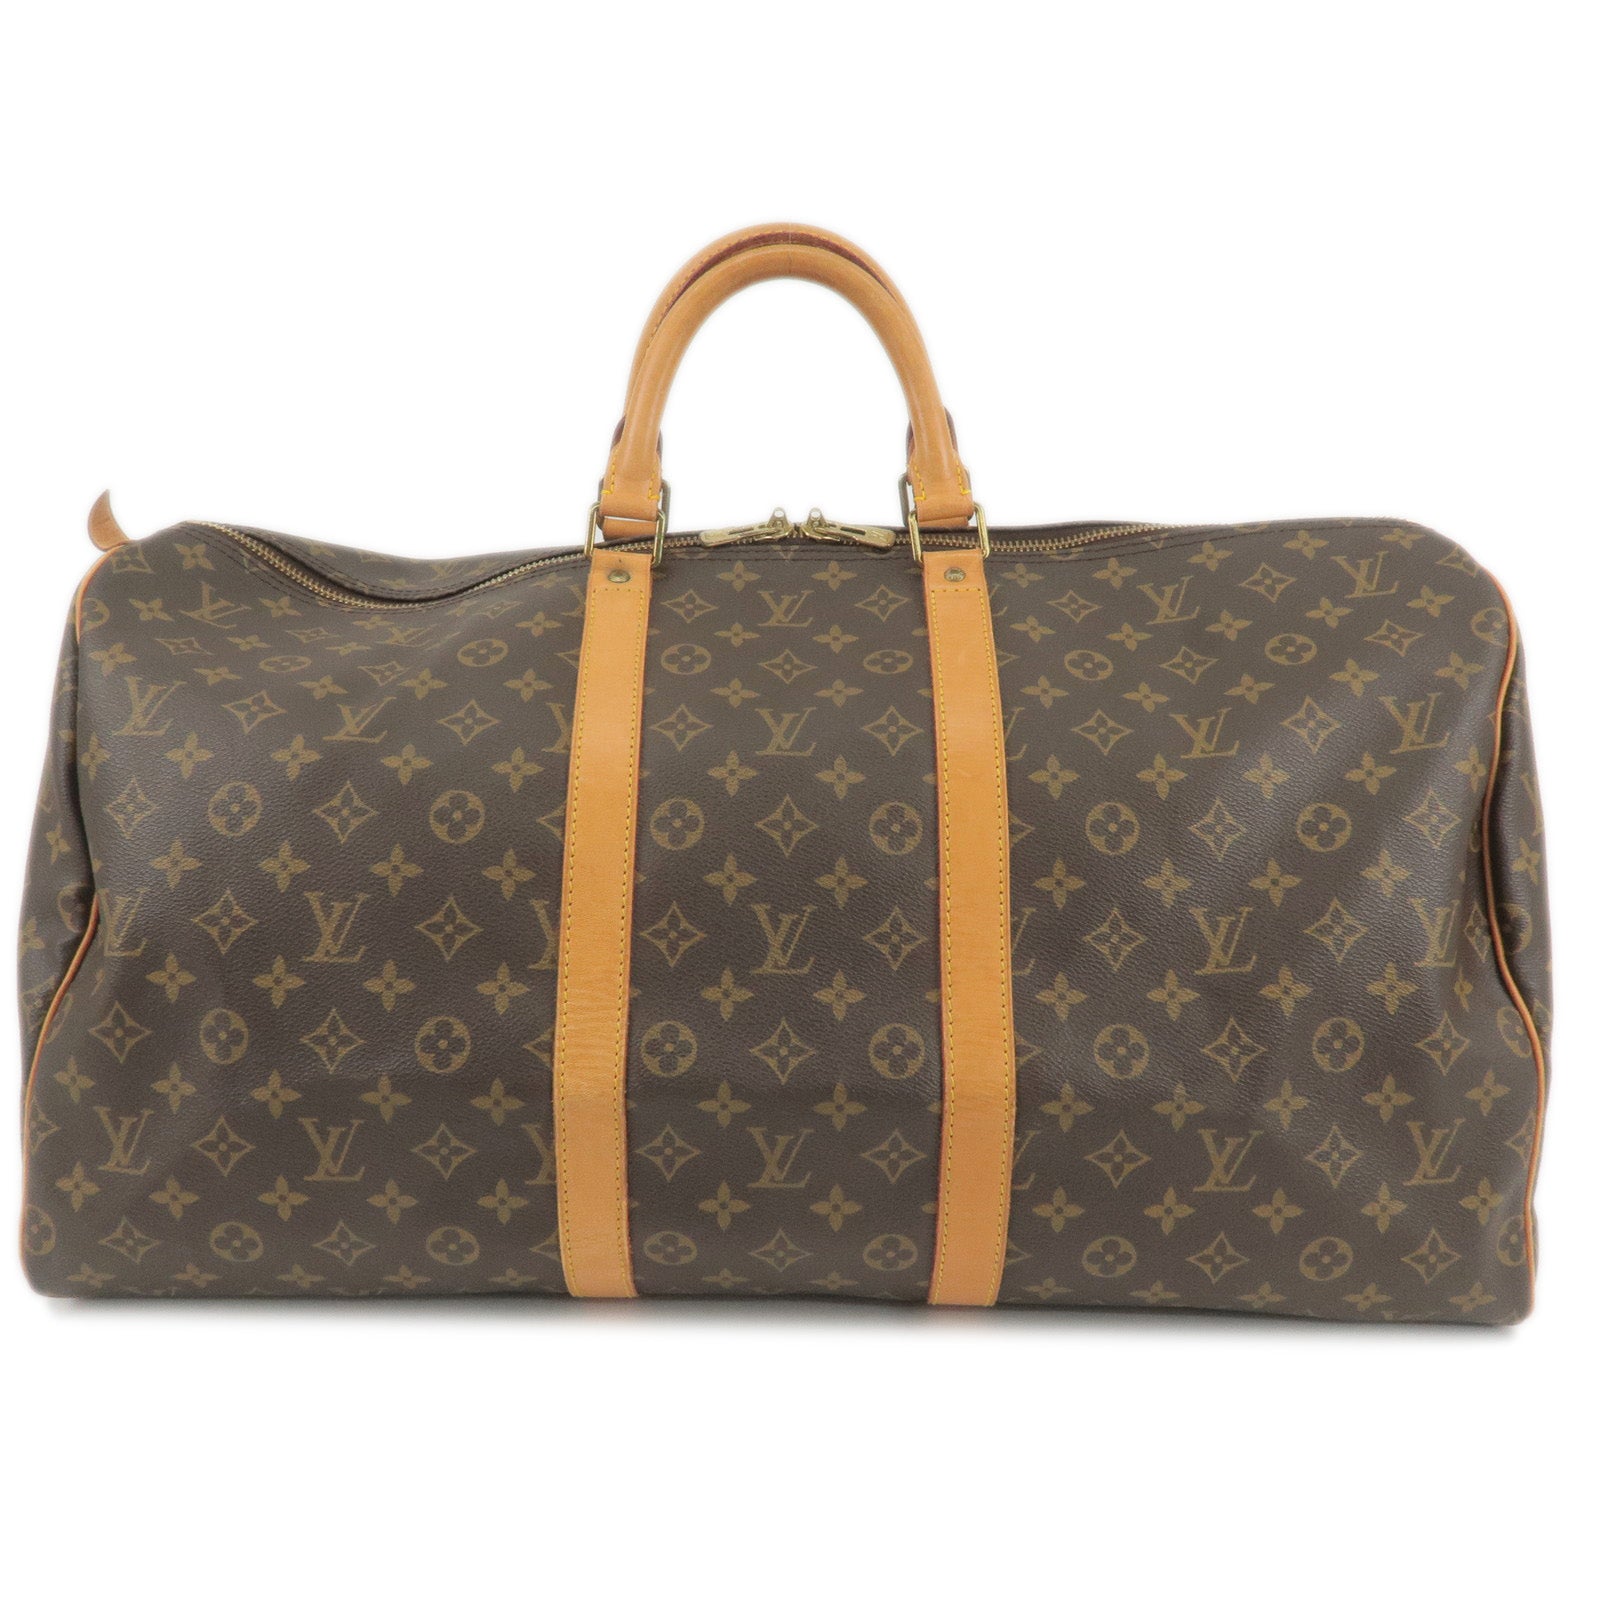 Louis Vuitton Greenwich Gm Boston Damier Ebene Travel Bag